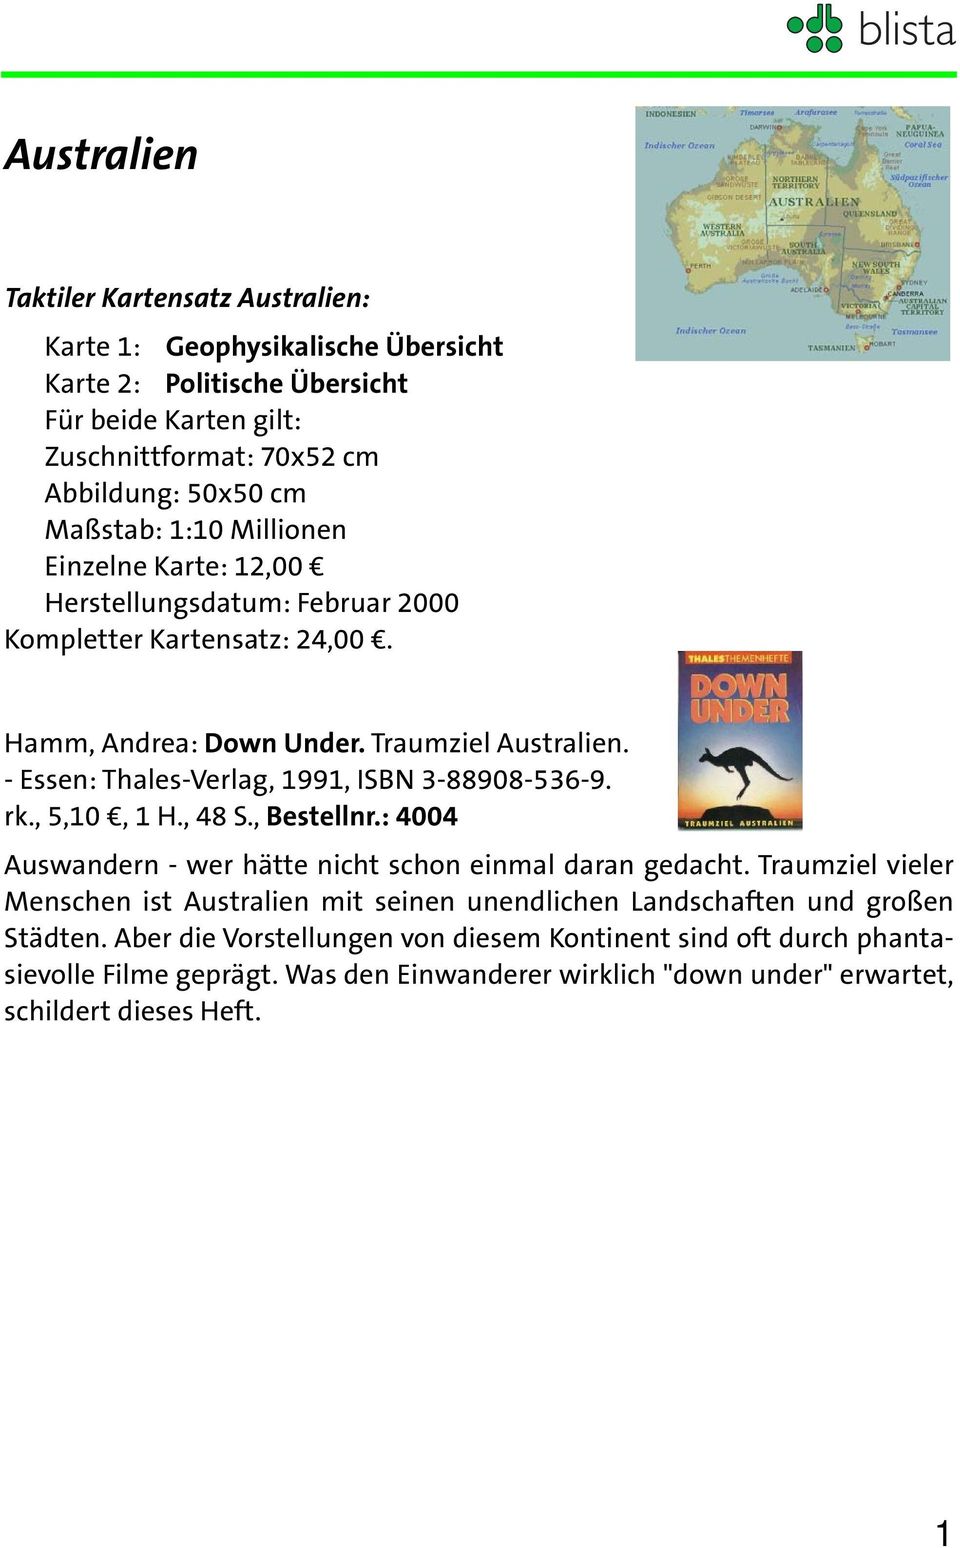 - Essen: Thales-Verlag, 1991, ISBN 3-88908-536-9. rk., 5,10, 1 H., 48 S., Bestellnr.: 4004 Auswandern - wer hätte nicht schon einmal daran gedacht.